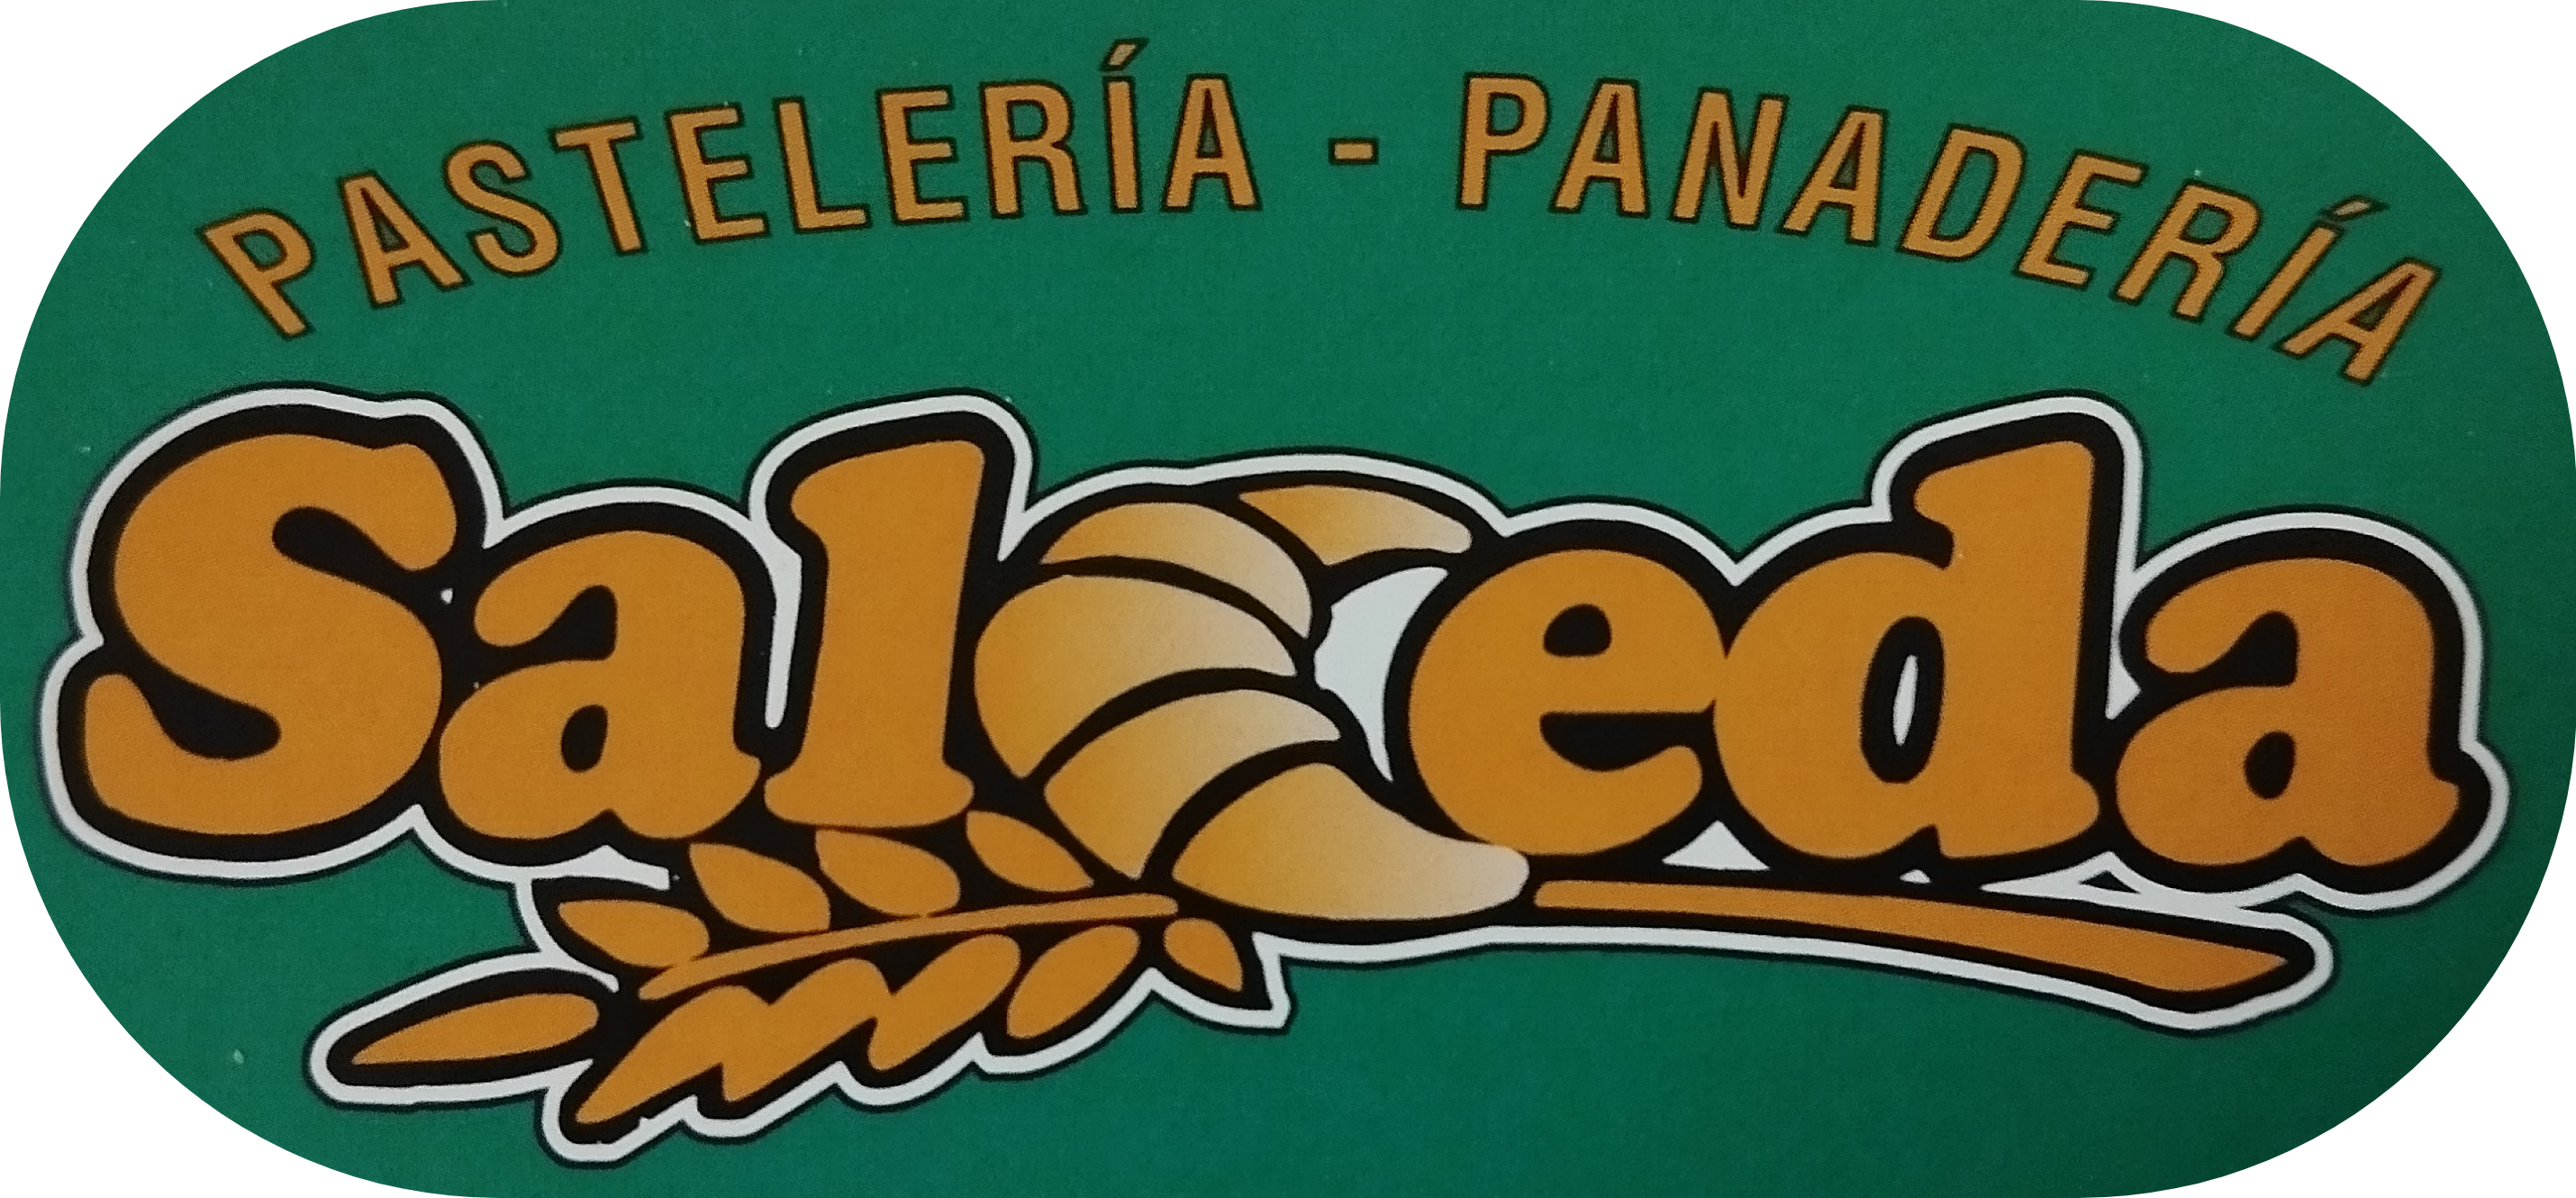 Pastelería-Panadería Salceda